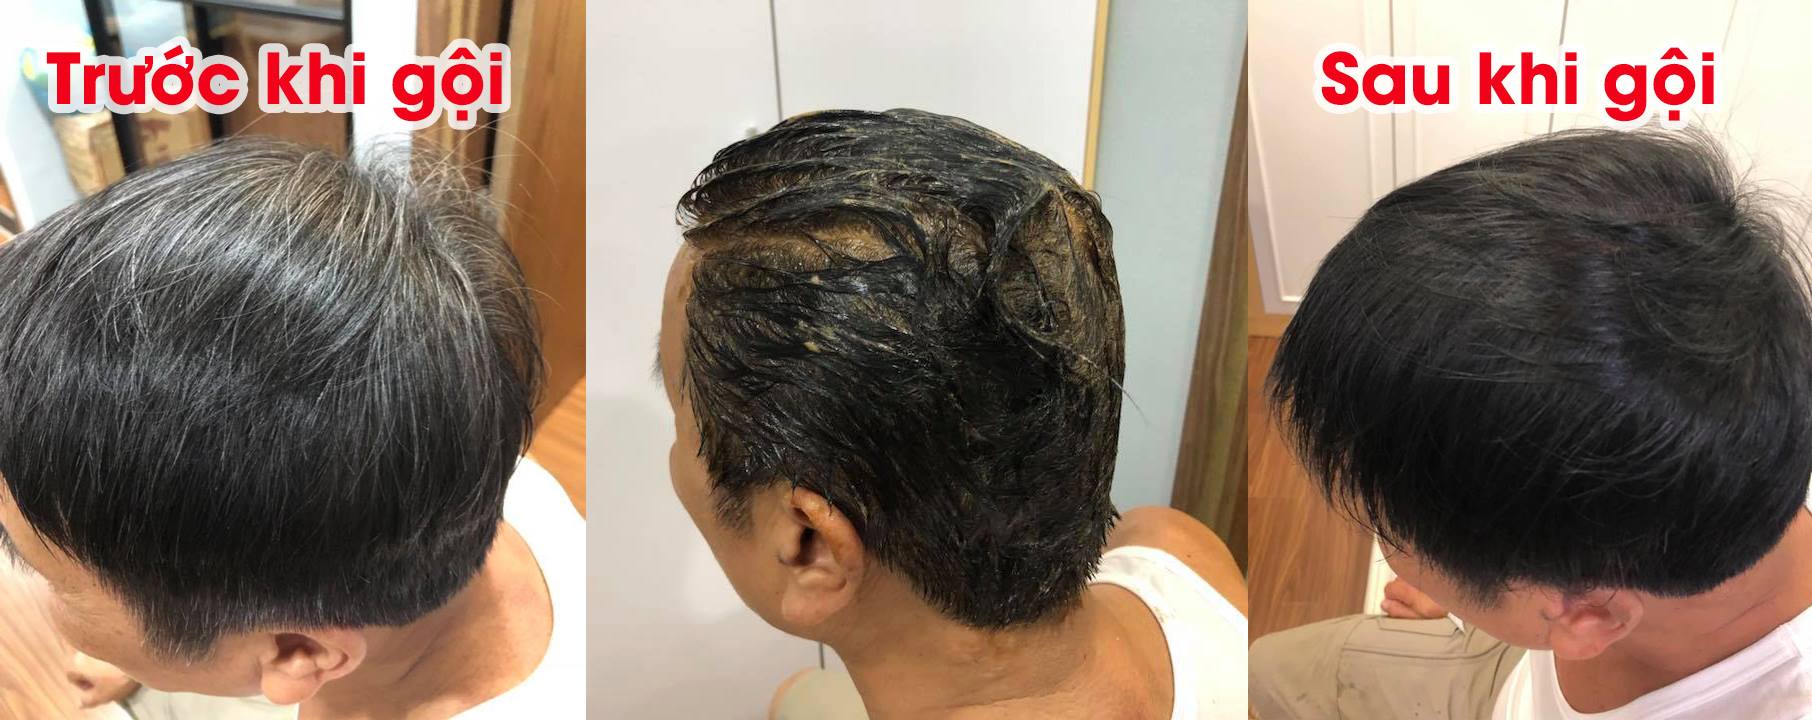 Mẹo nhỏ biến tóc bạc thành tóc đen chỉ sau 5p an toàn, hiệu quả, không kích ứng, ảnh hưởng đến da đầu.